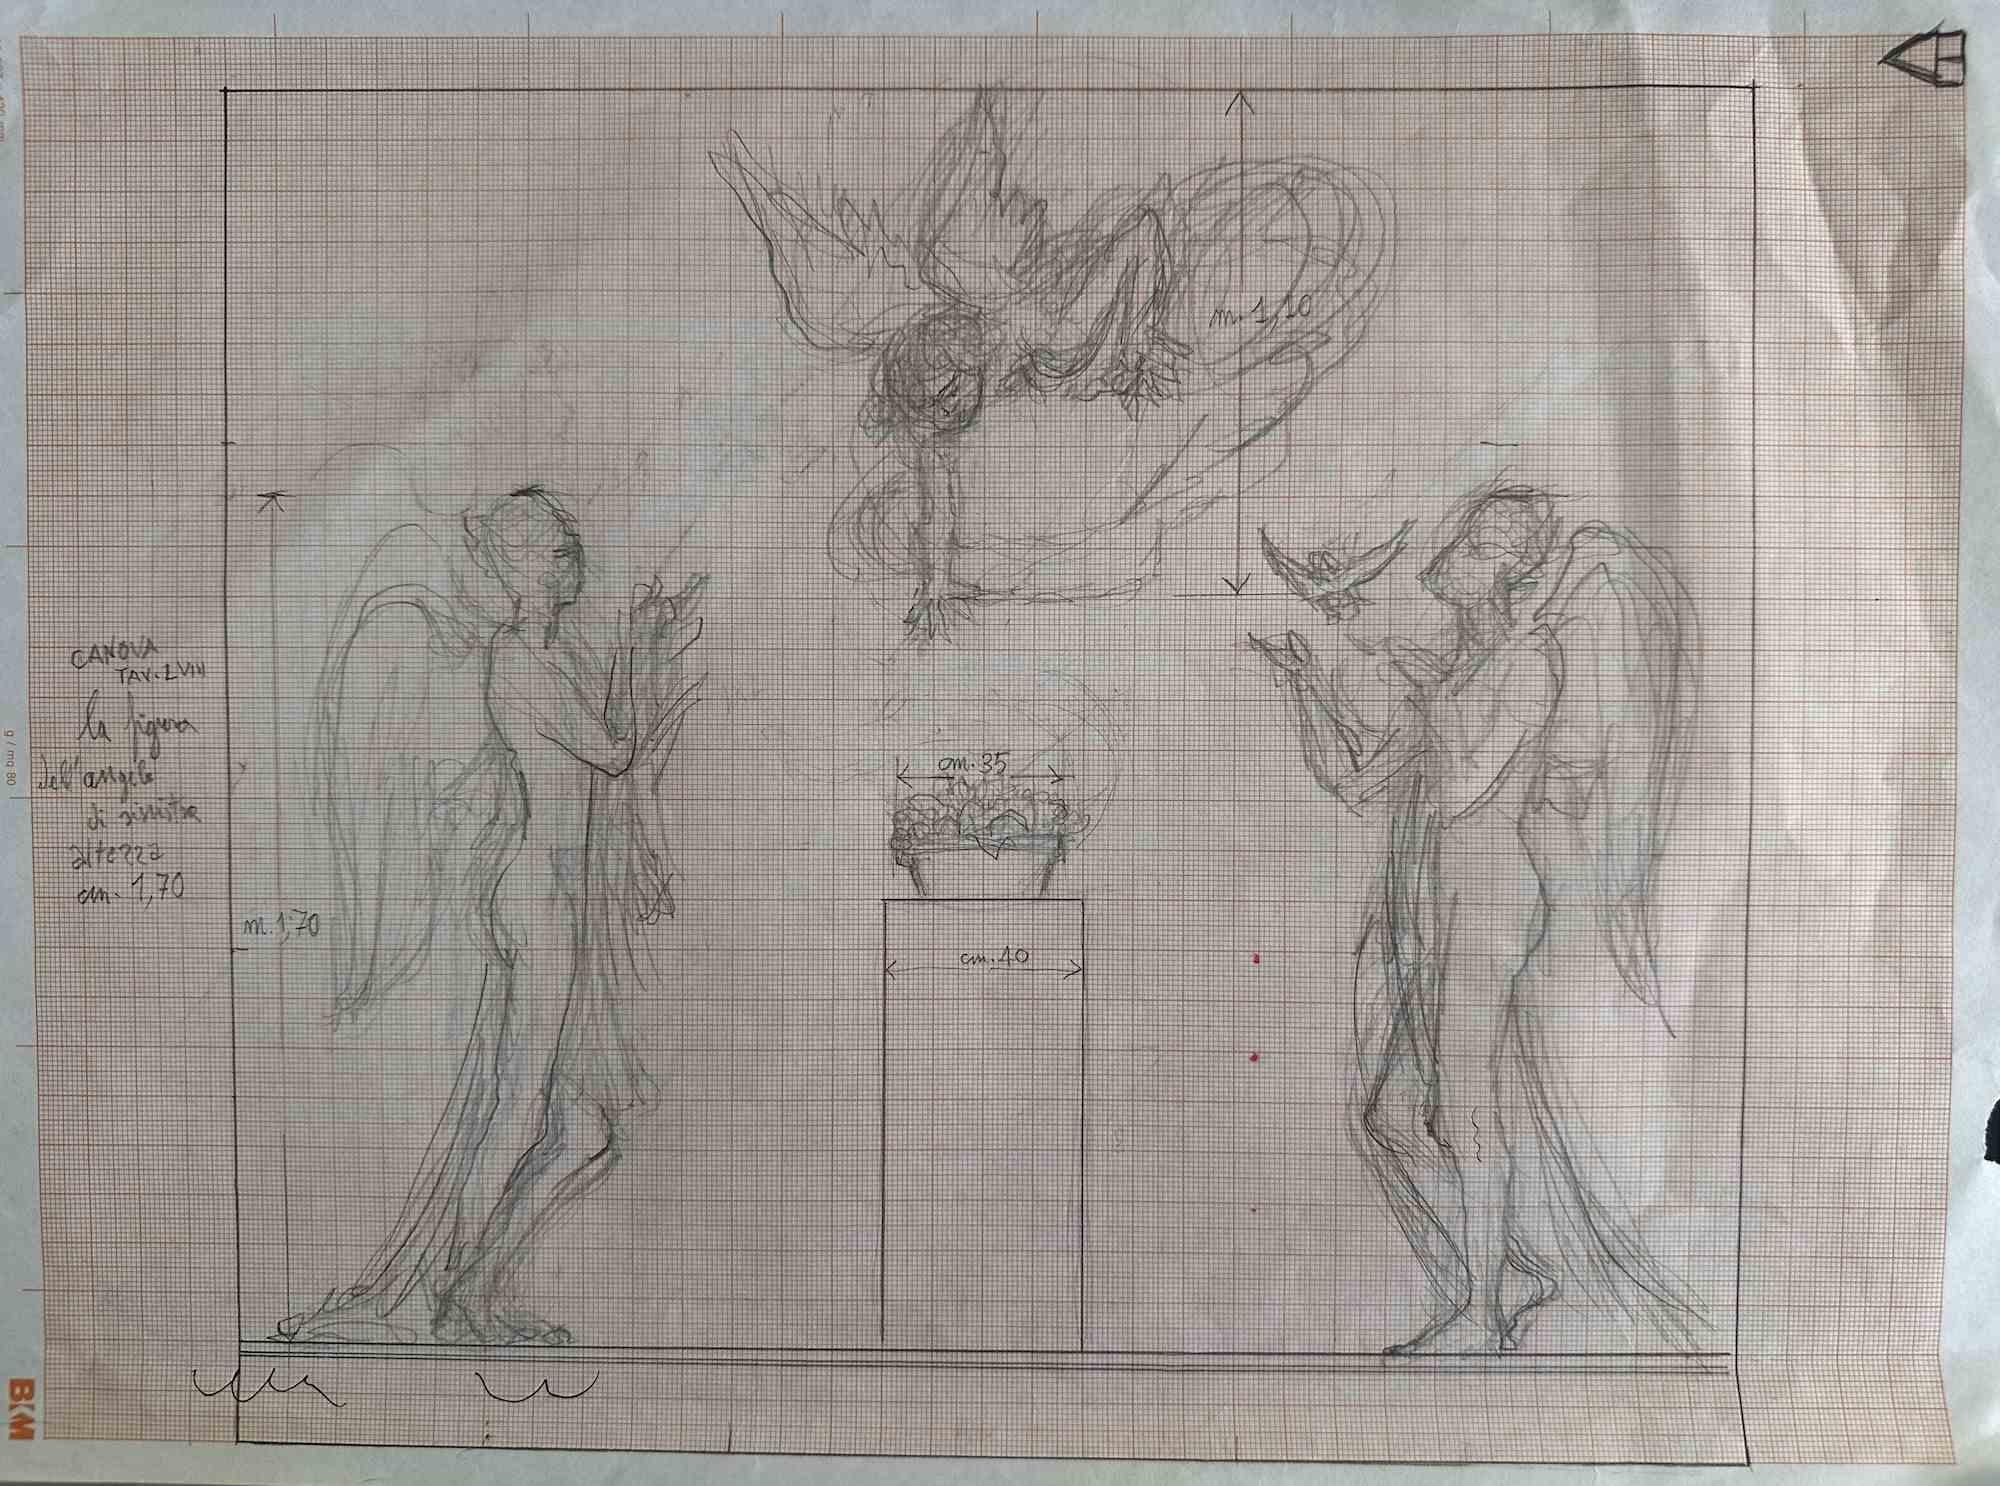 Engel von Canova ist eine Bleistiftzeichnung auf Papier, die von einem anonymen Künstler in der Mitte des 20. Jahrhunderts angefertigt wurde.

Guter Zustand mit leichten Faltungen.